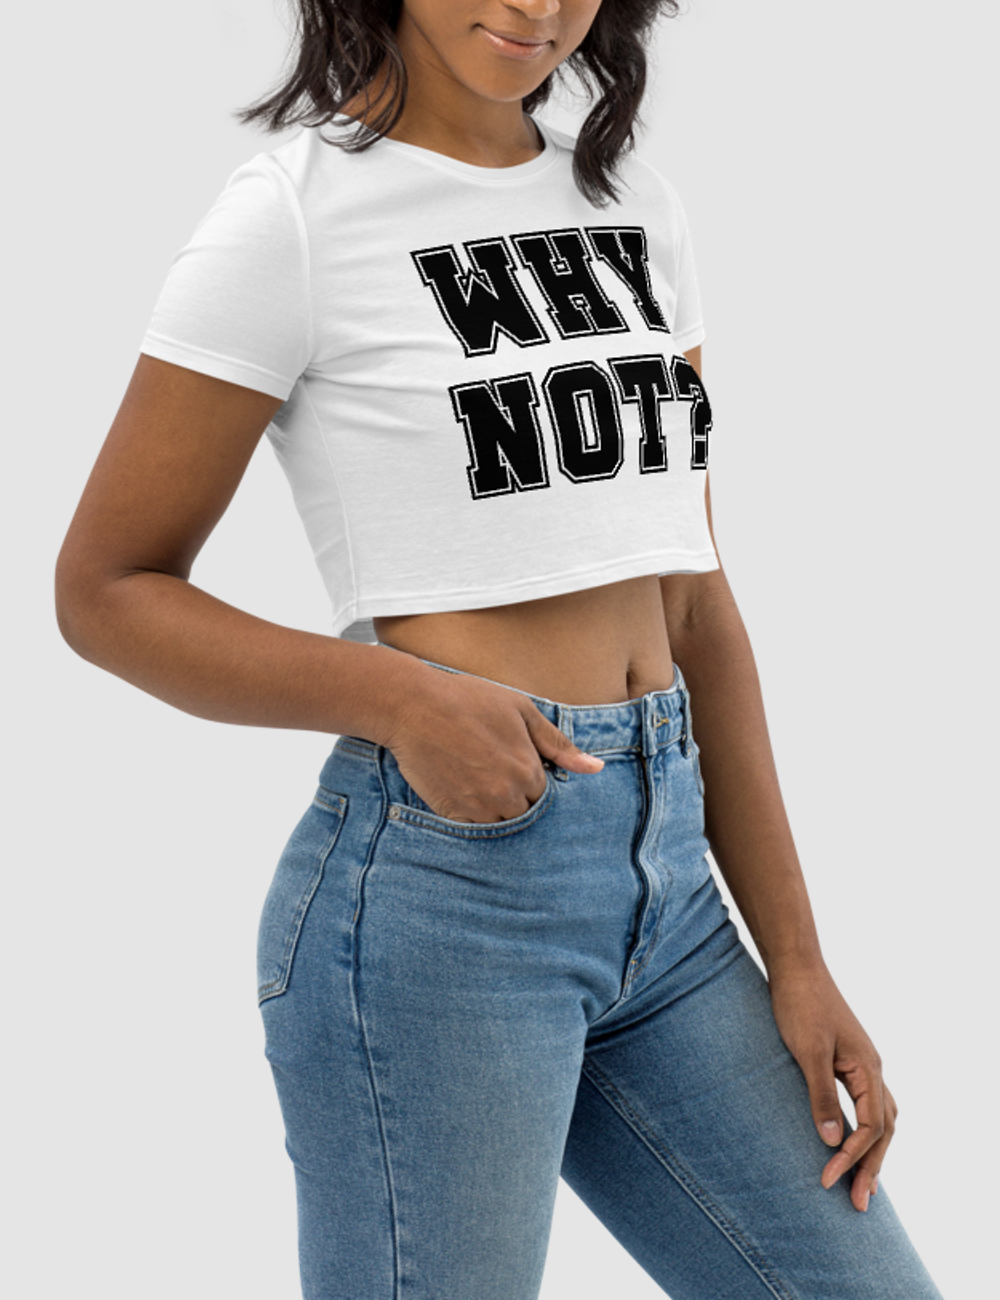 Why Not? | Women's Crop Top T-Shirt OniTakai